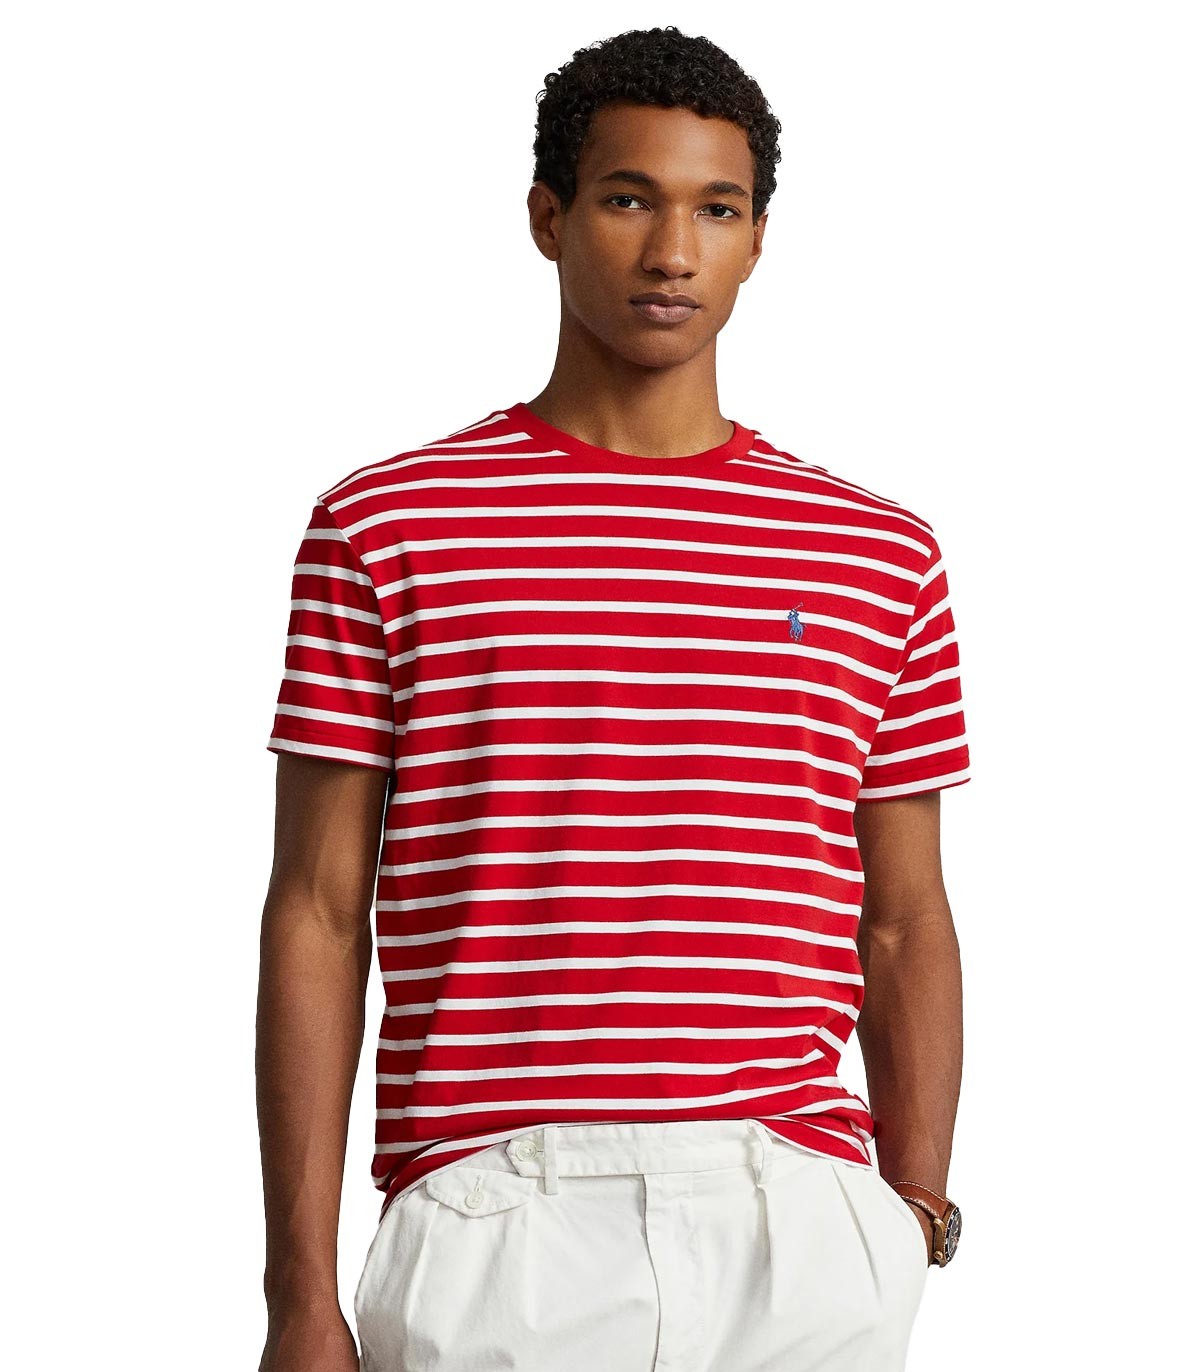 Polo Ralph Lauren - Camiseta de Rayas - Rojo